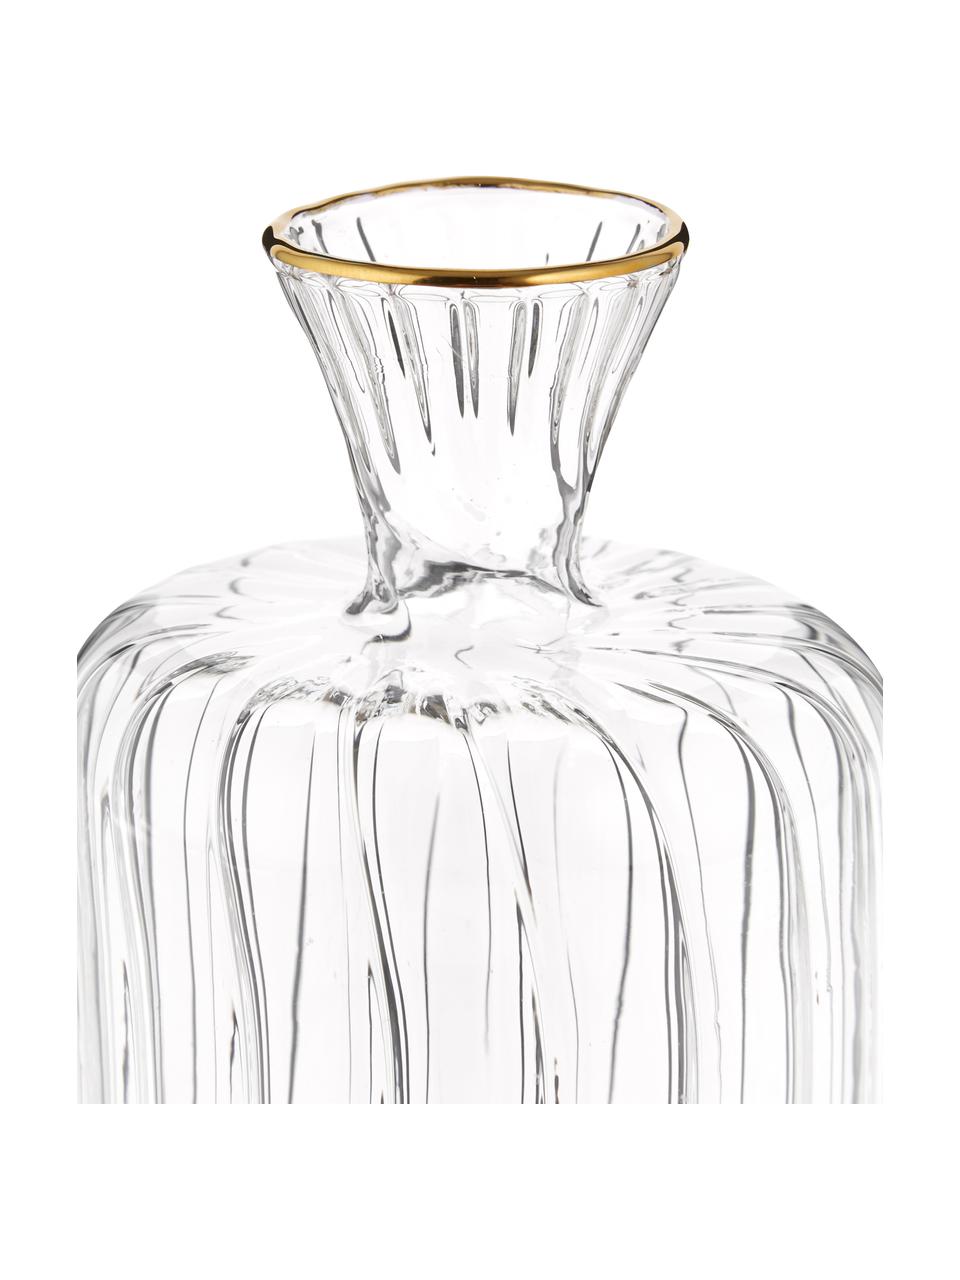 Malá skleněná váza se zlatým okrajem Plinn, Sklo, Transparentní, zlatá, Ø 7 cm, V 10 cm